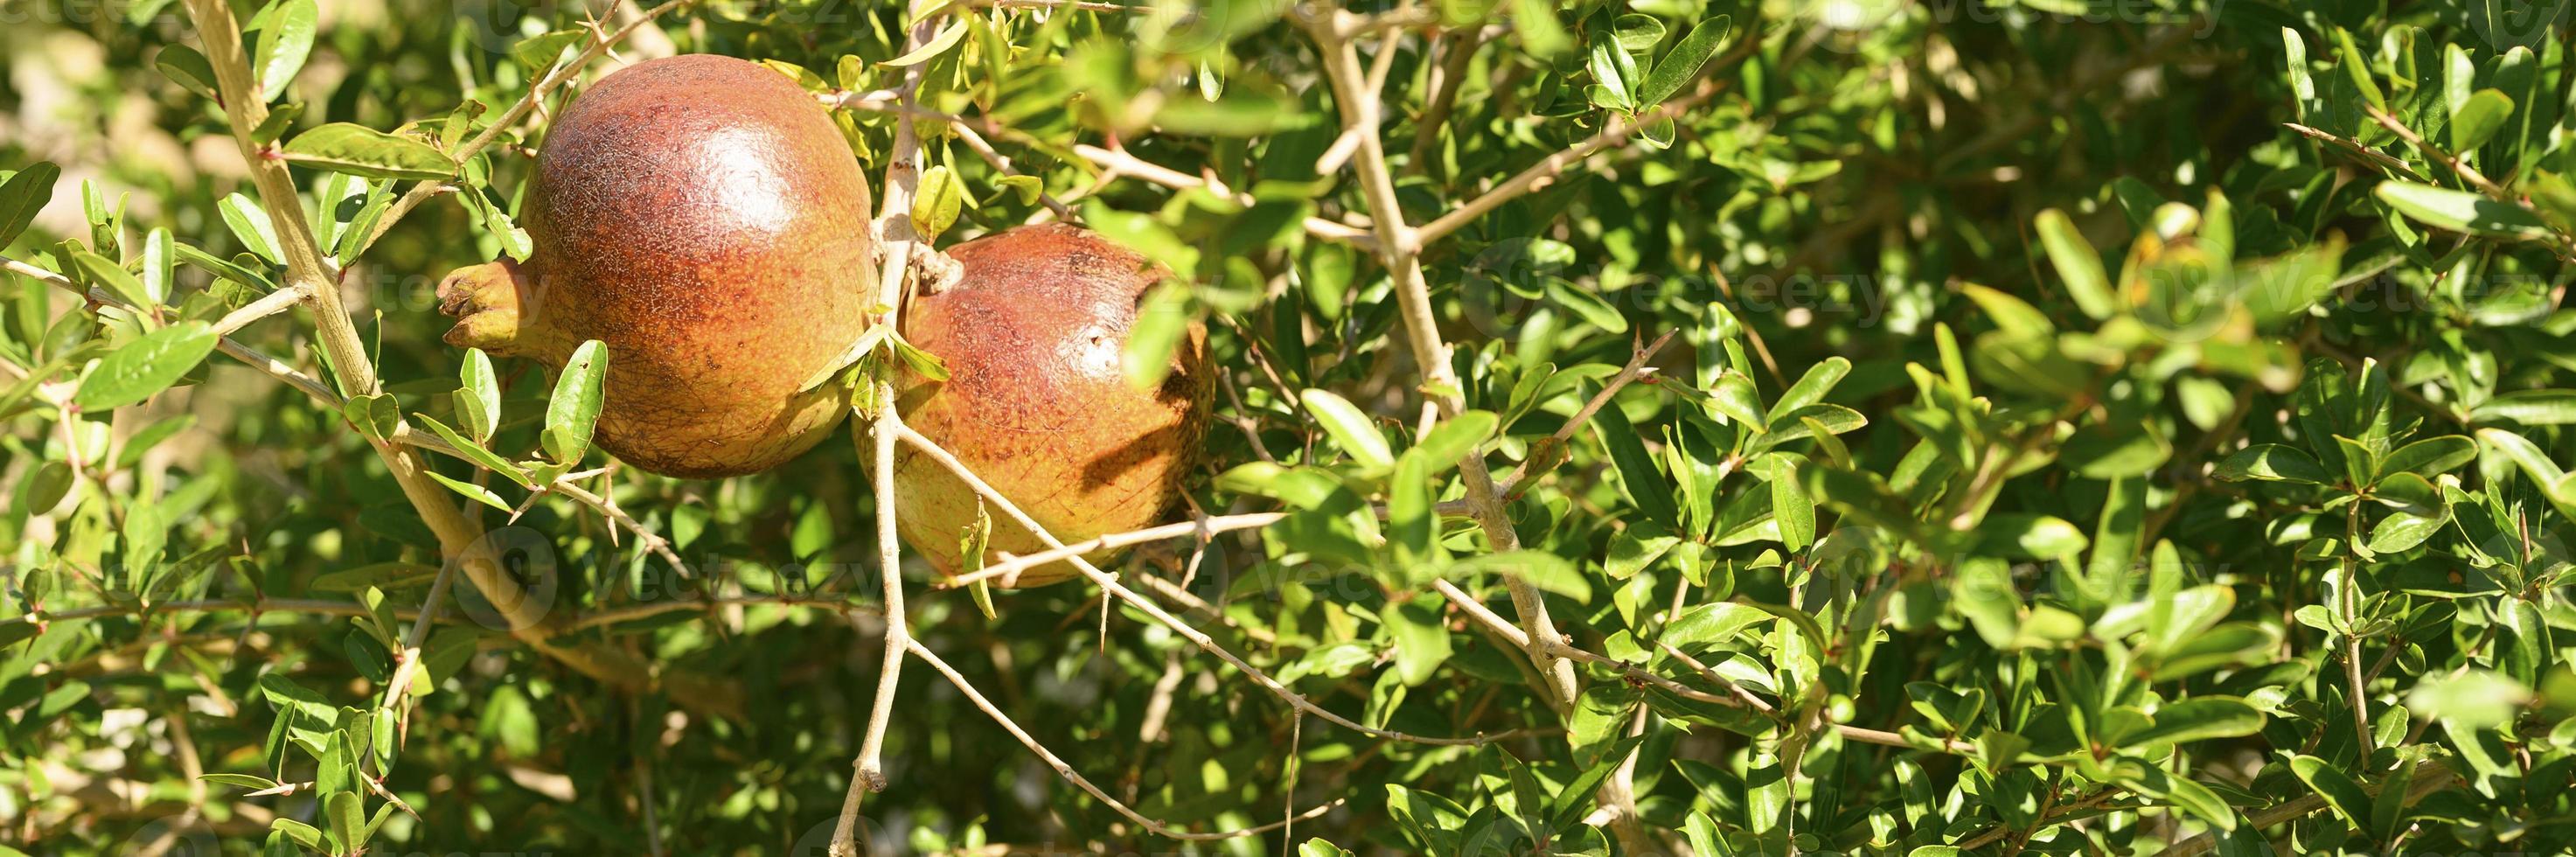 mogna röda granatäpplen växer på en trädgren i trädgården foto